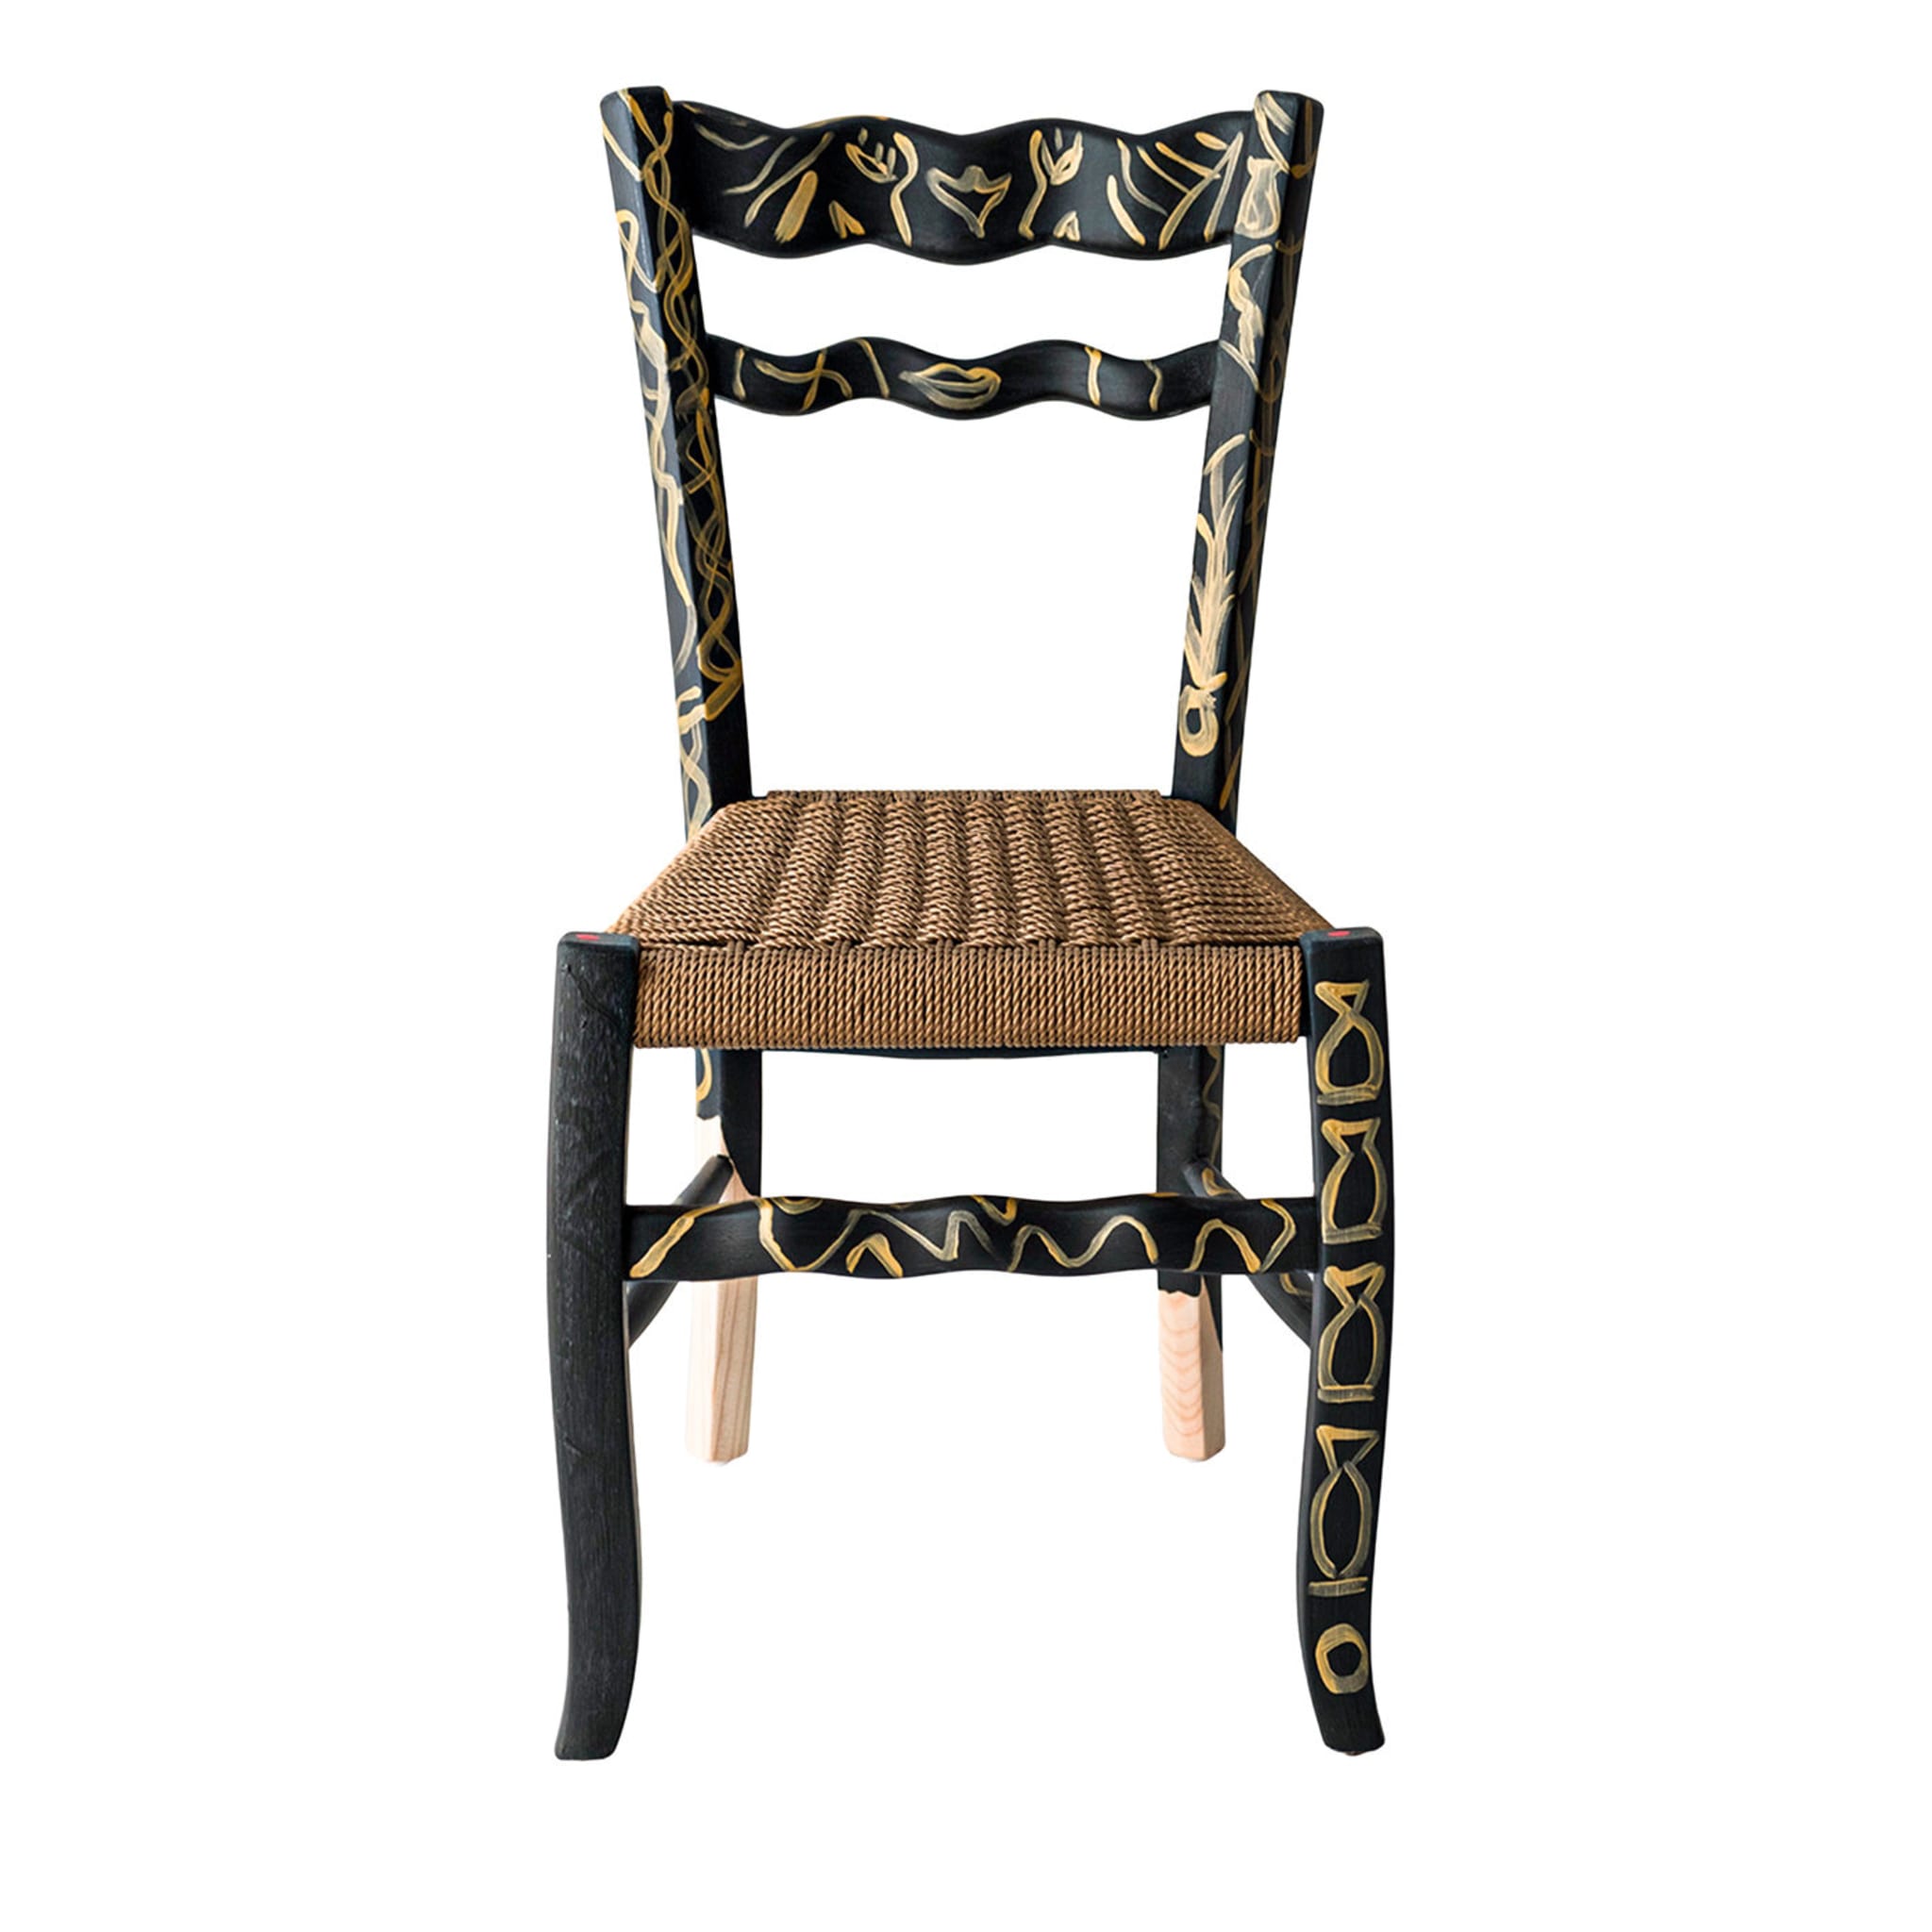 A Signurina Pupara Chair by Antonio Aricò - Main view